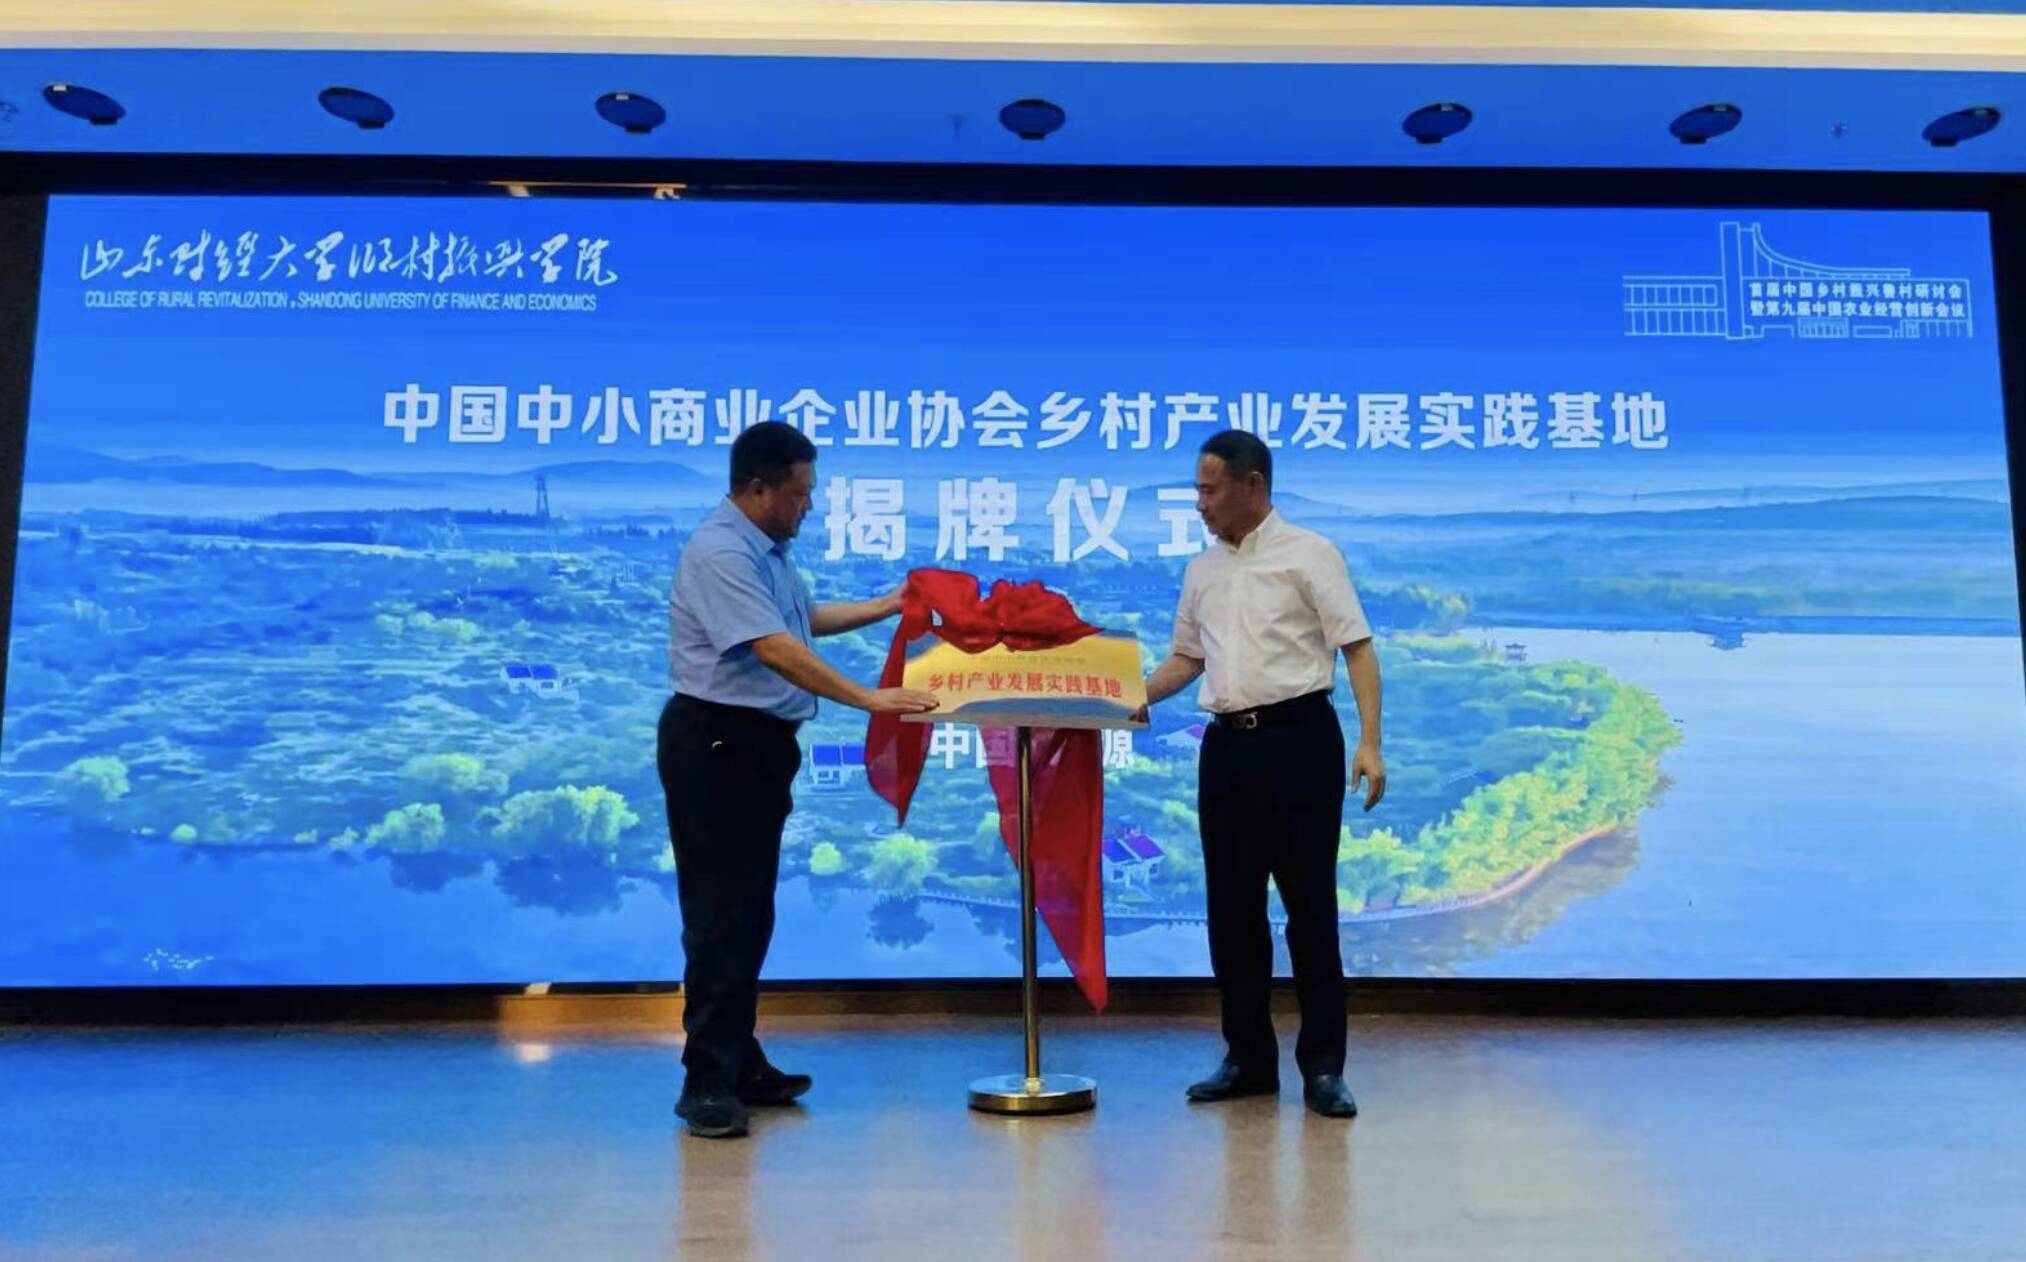 首届中国乡村振兴鲁村研讨会暨第九届中国农业经营创新会议在沂源成功举行